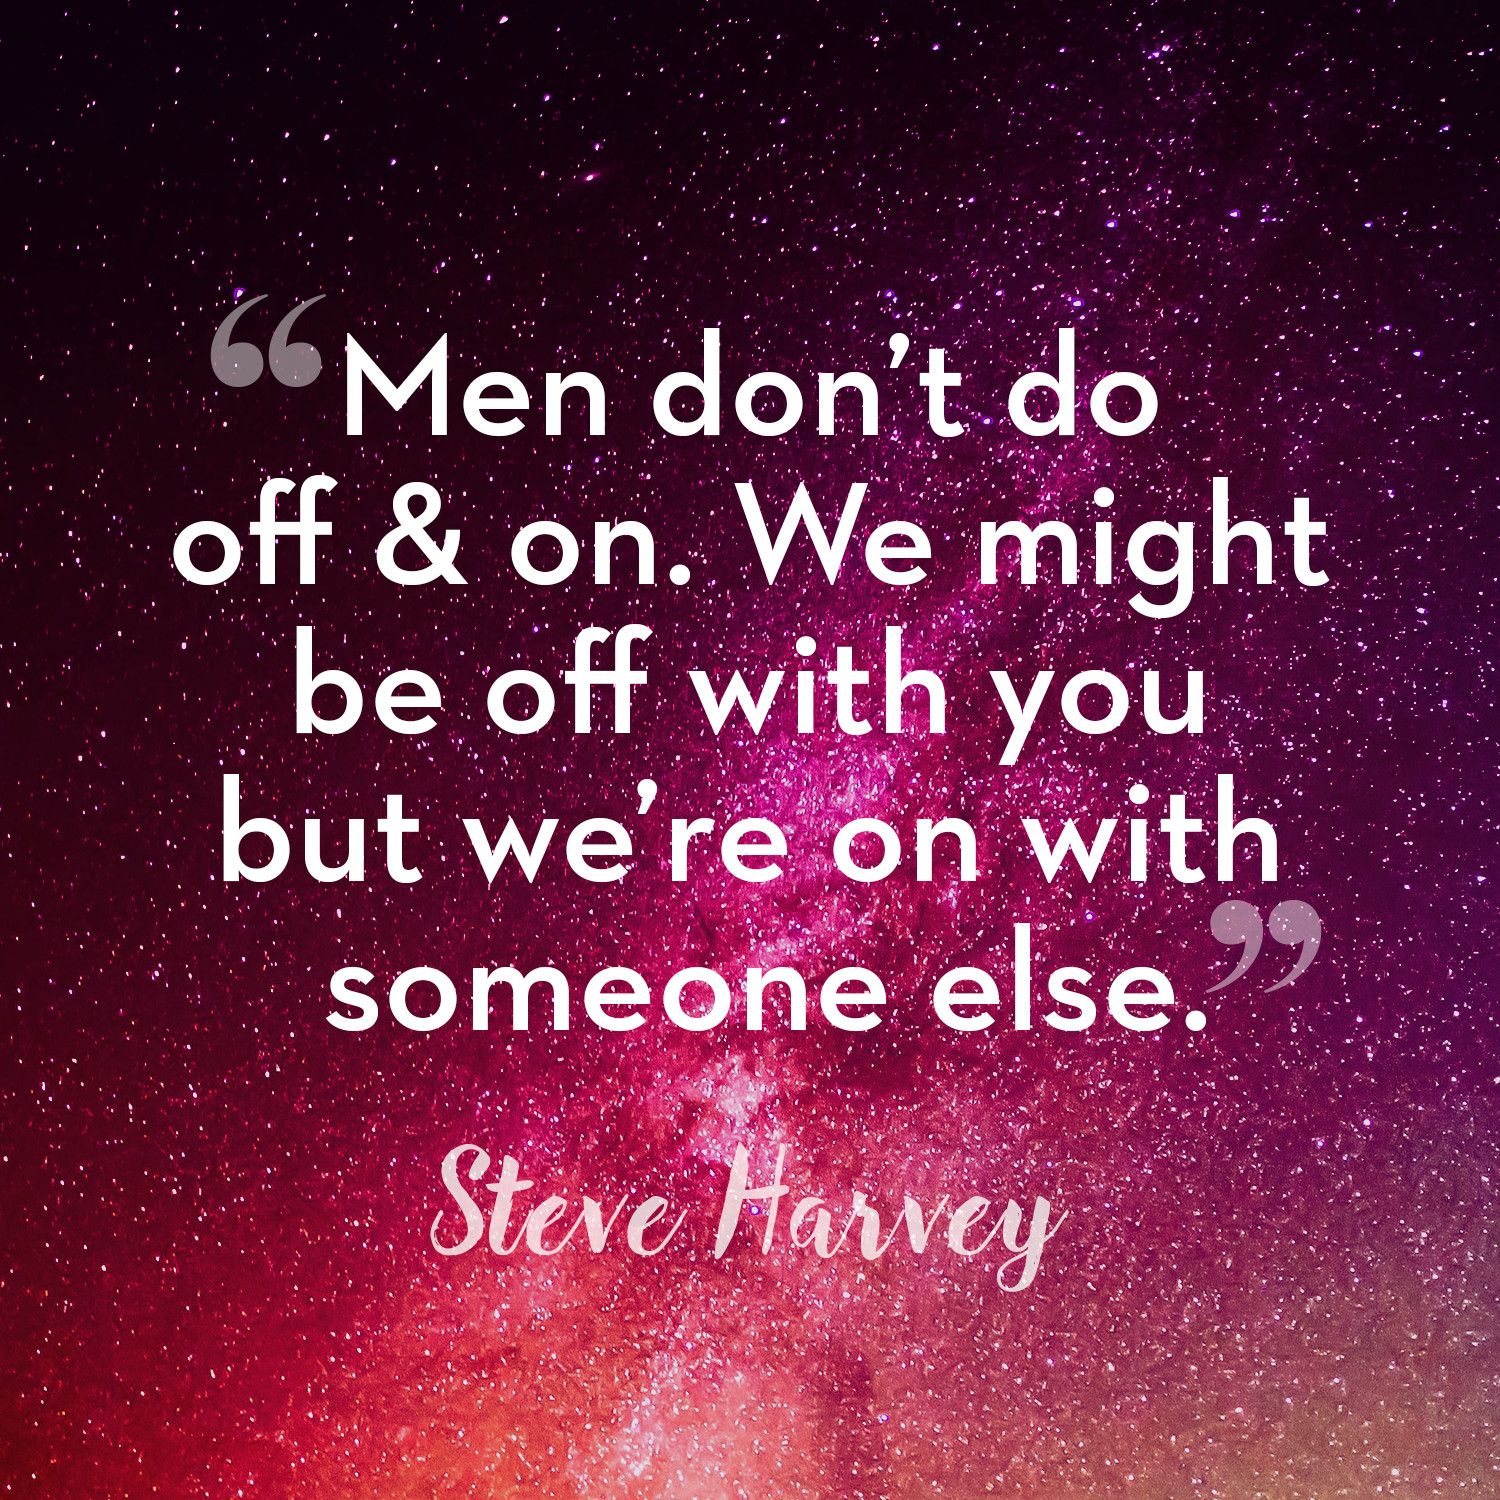 50 Best Relationship Quotes From Steve Harvey Steve Harvey